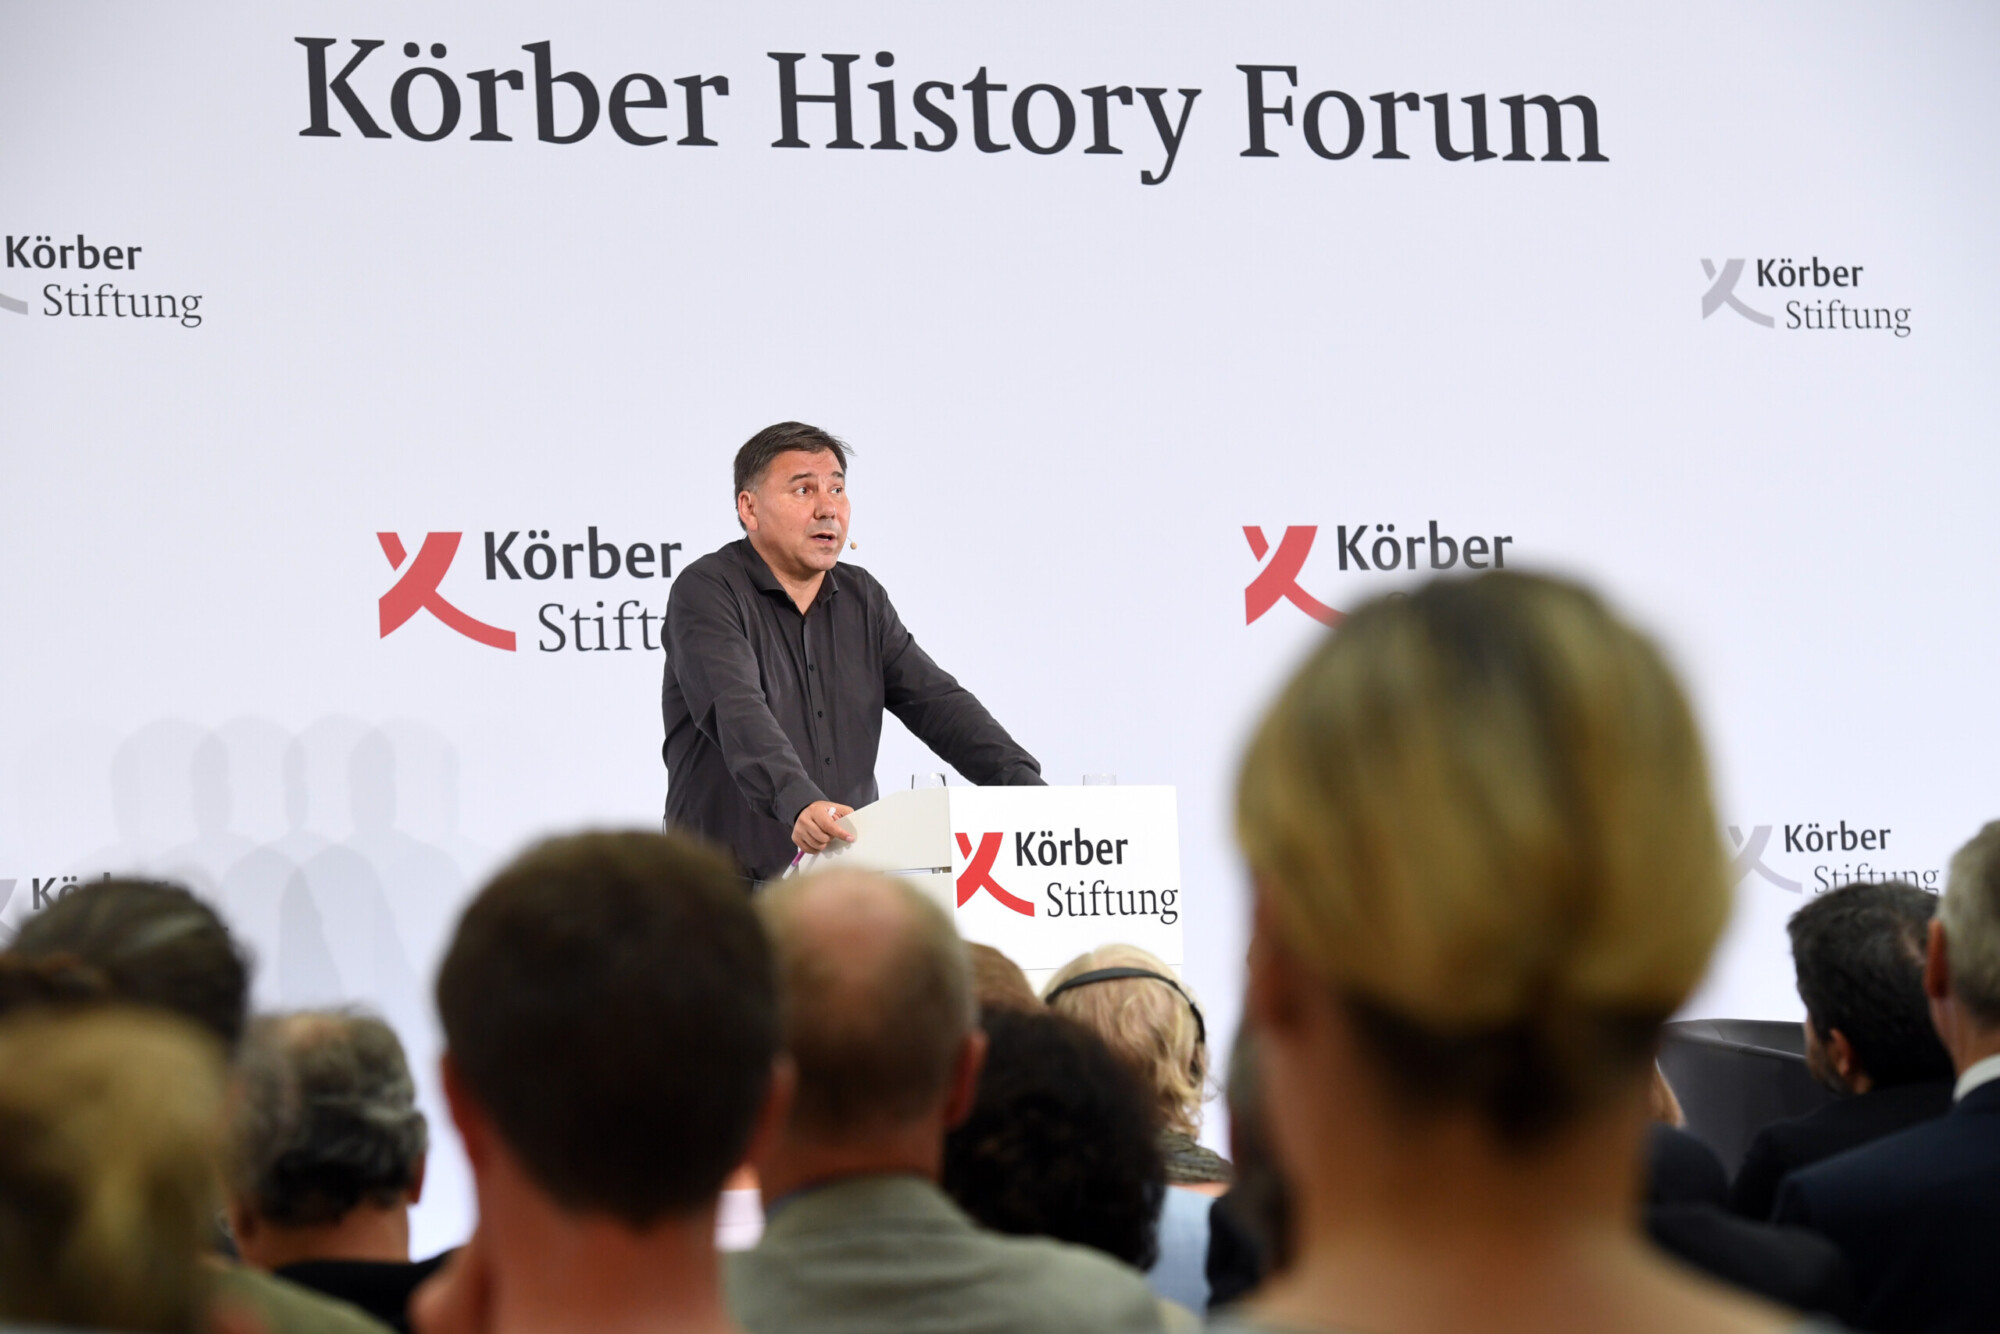 Körber History Forum